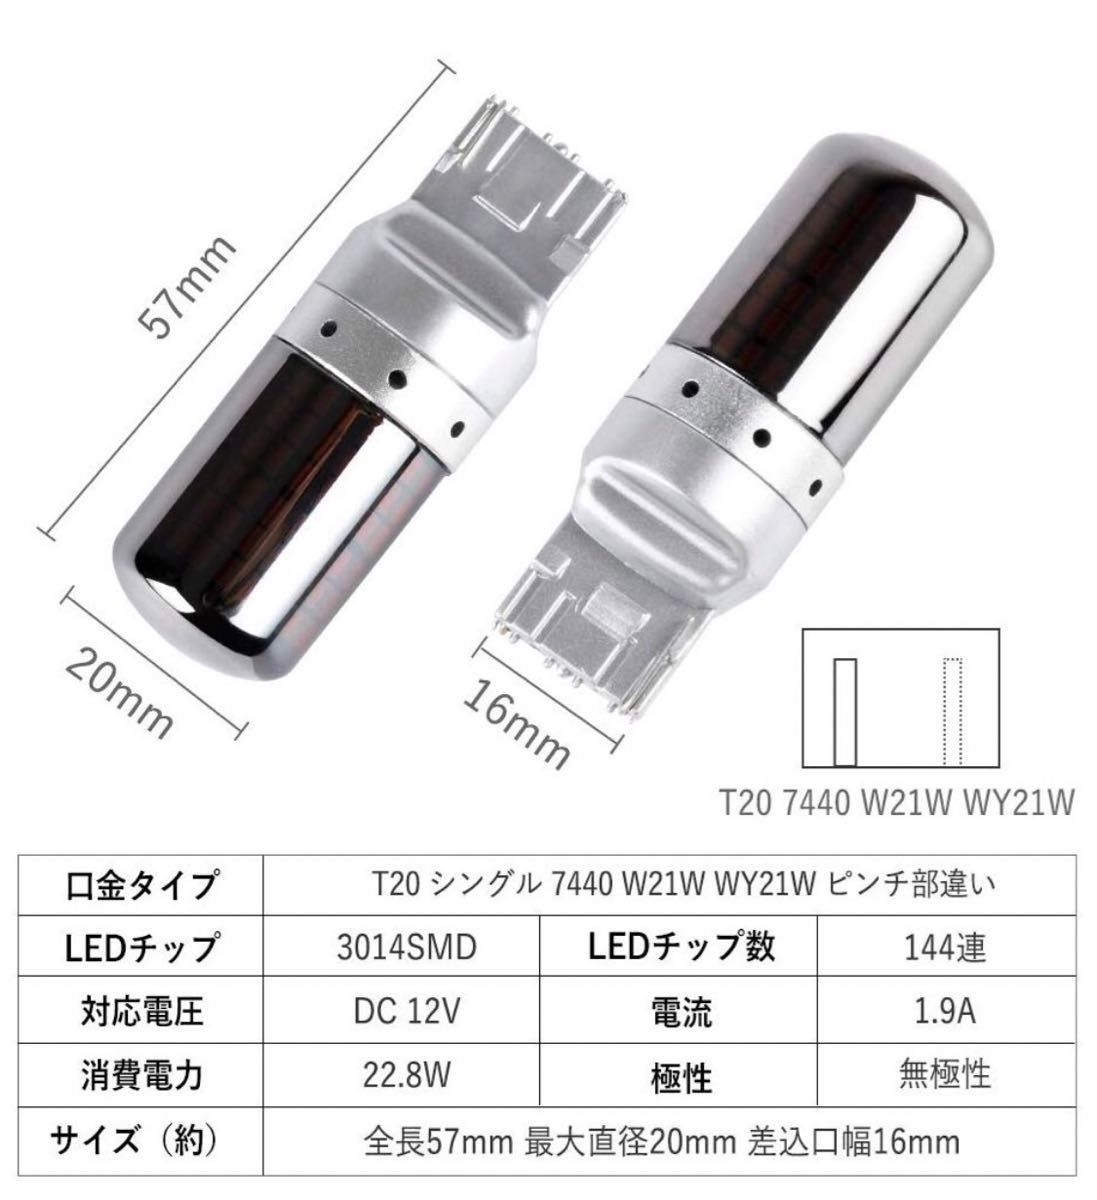 爆光 最新 新品 LED T20 ステルスウインカーバルブ オレンジ色 ハイフラ防止抵抗内蔵 2個セット